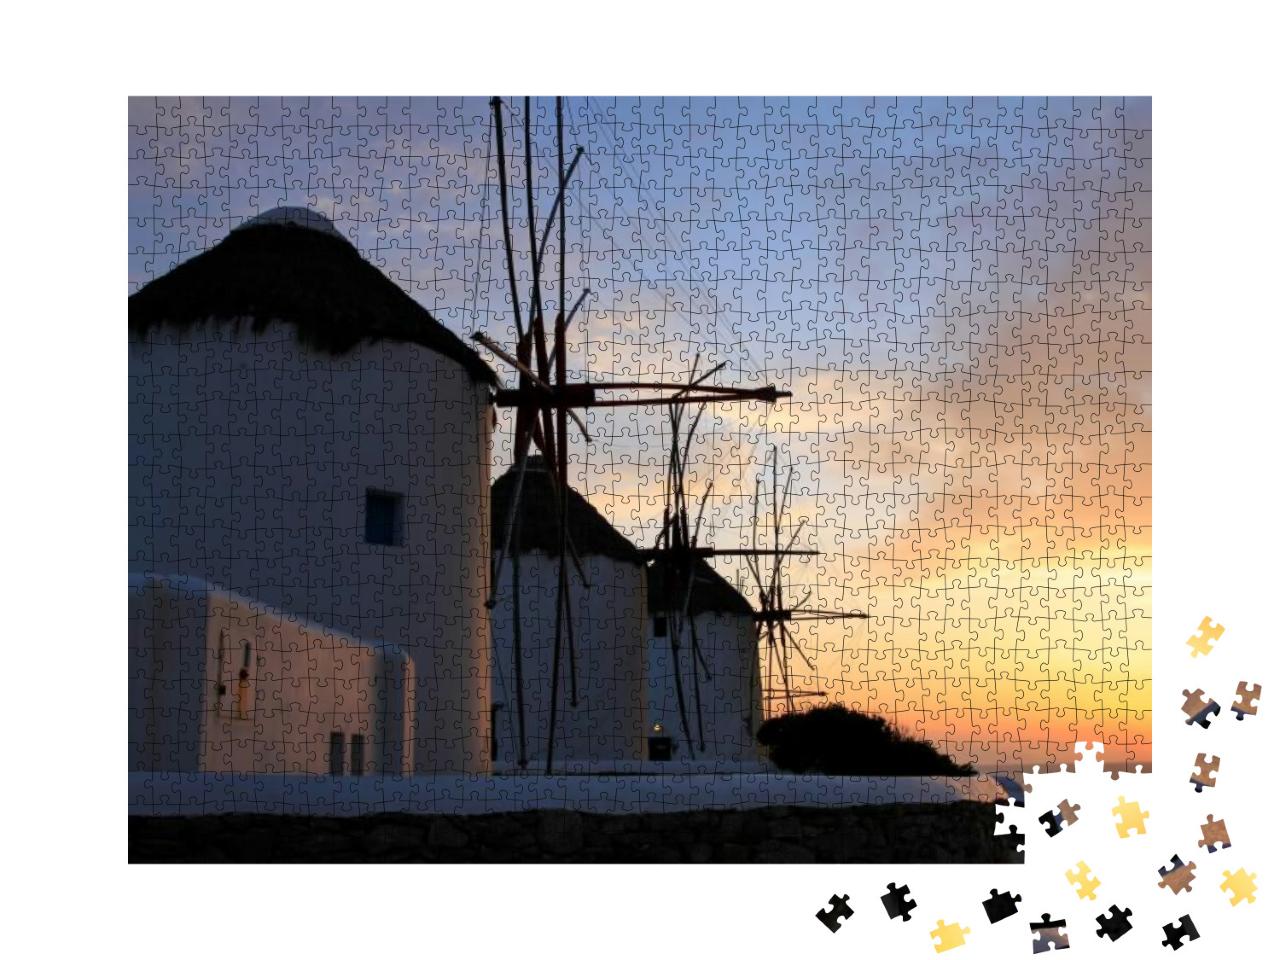 Puzzle 1000 Teile „Windmühlen bei Sonnenuntergang in Mykonos, Griechenland“